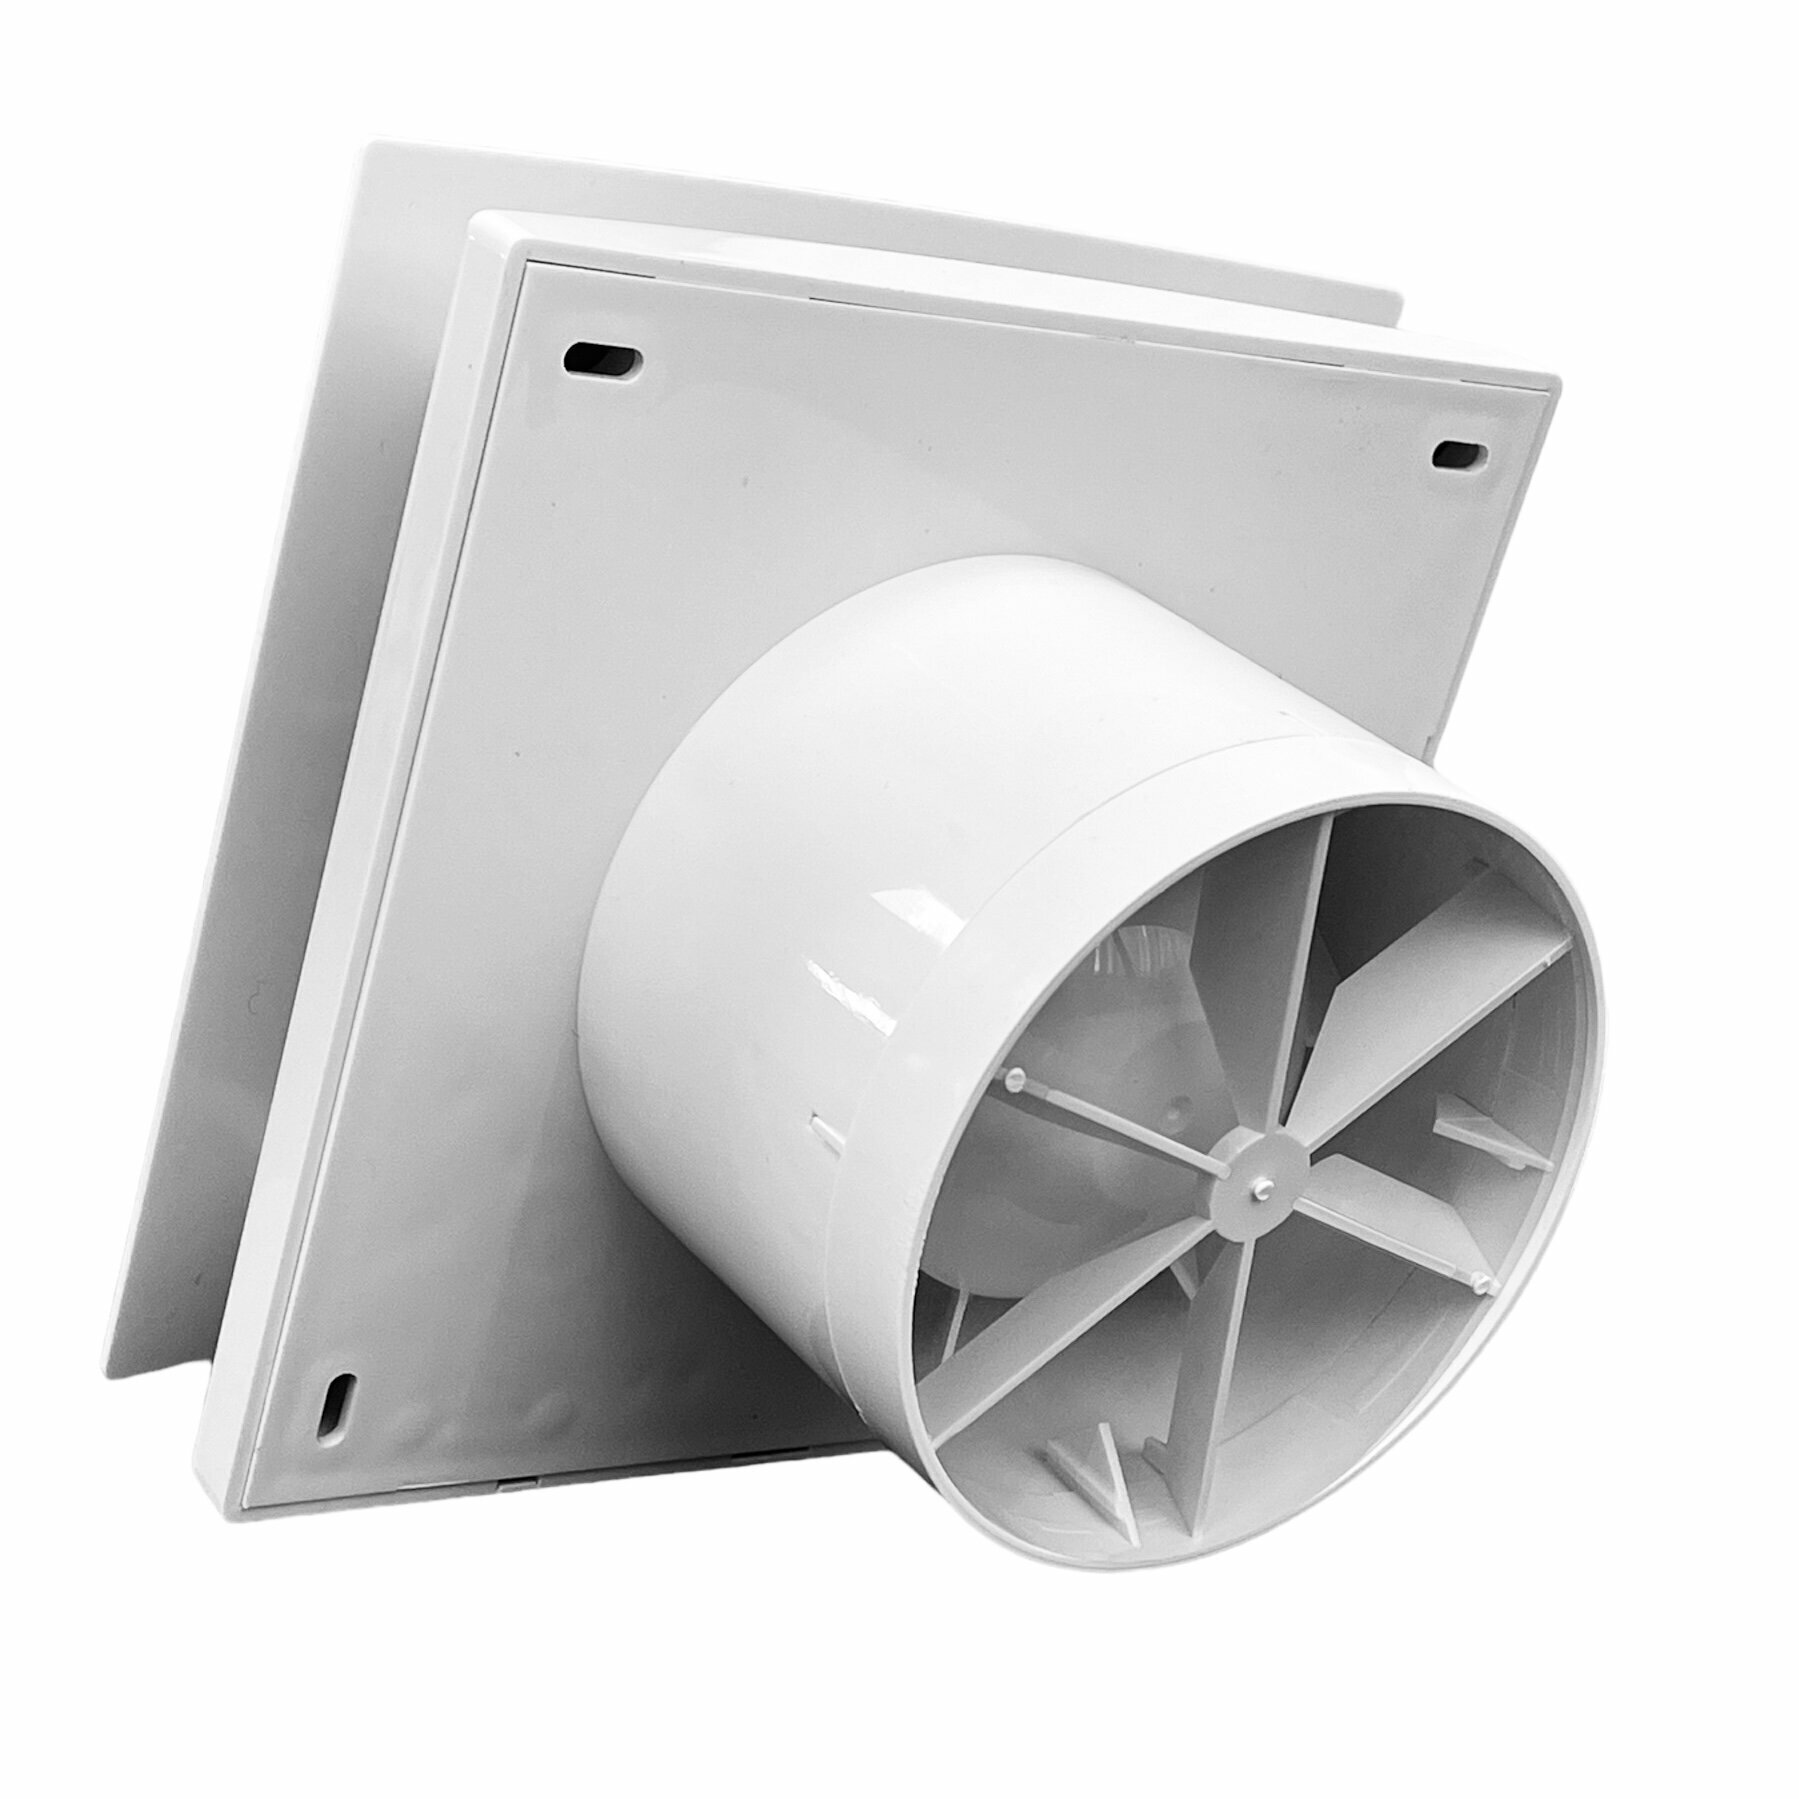 Вентилятор вытяжной D120/125 mm. С лицевой панелью, с обратным клапаном, VENTSFERA 120 R, пластиковый, для кухни, туалета